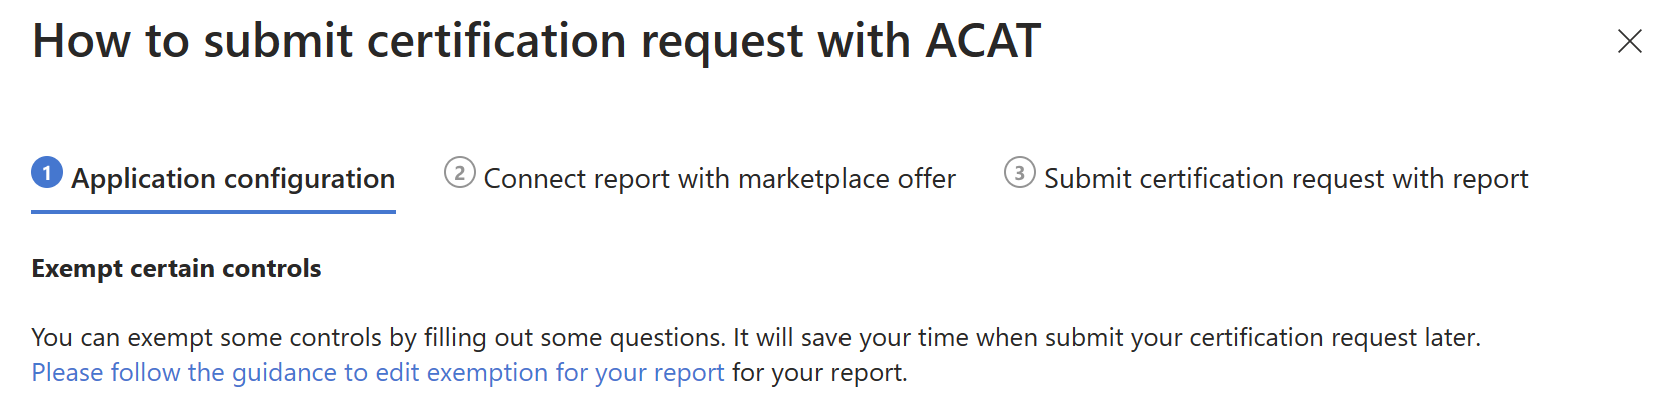 Leitfaden zum Übermitteln der Zertifizierung mit ACAT